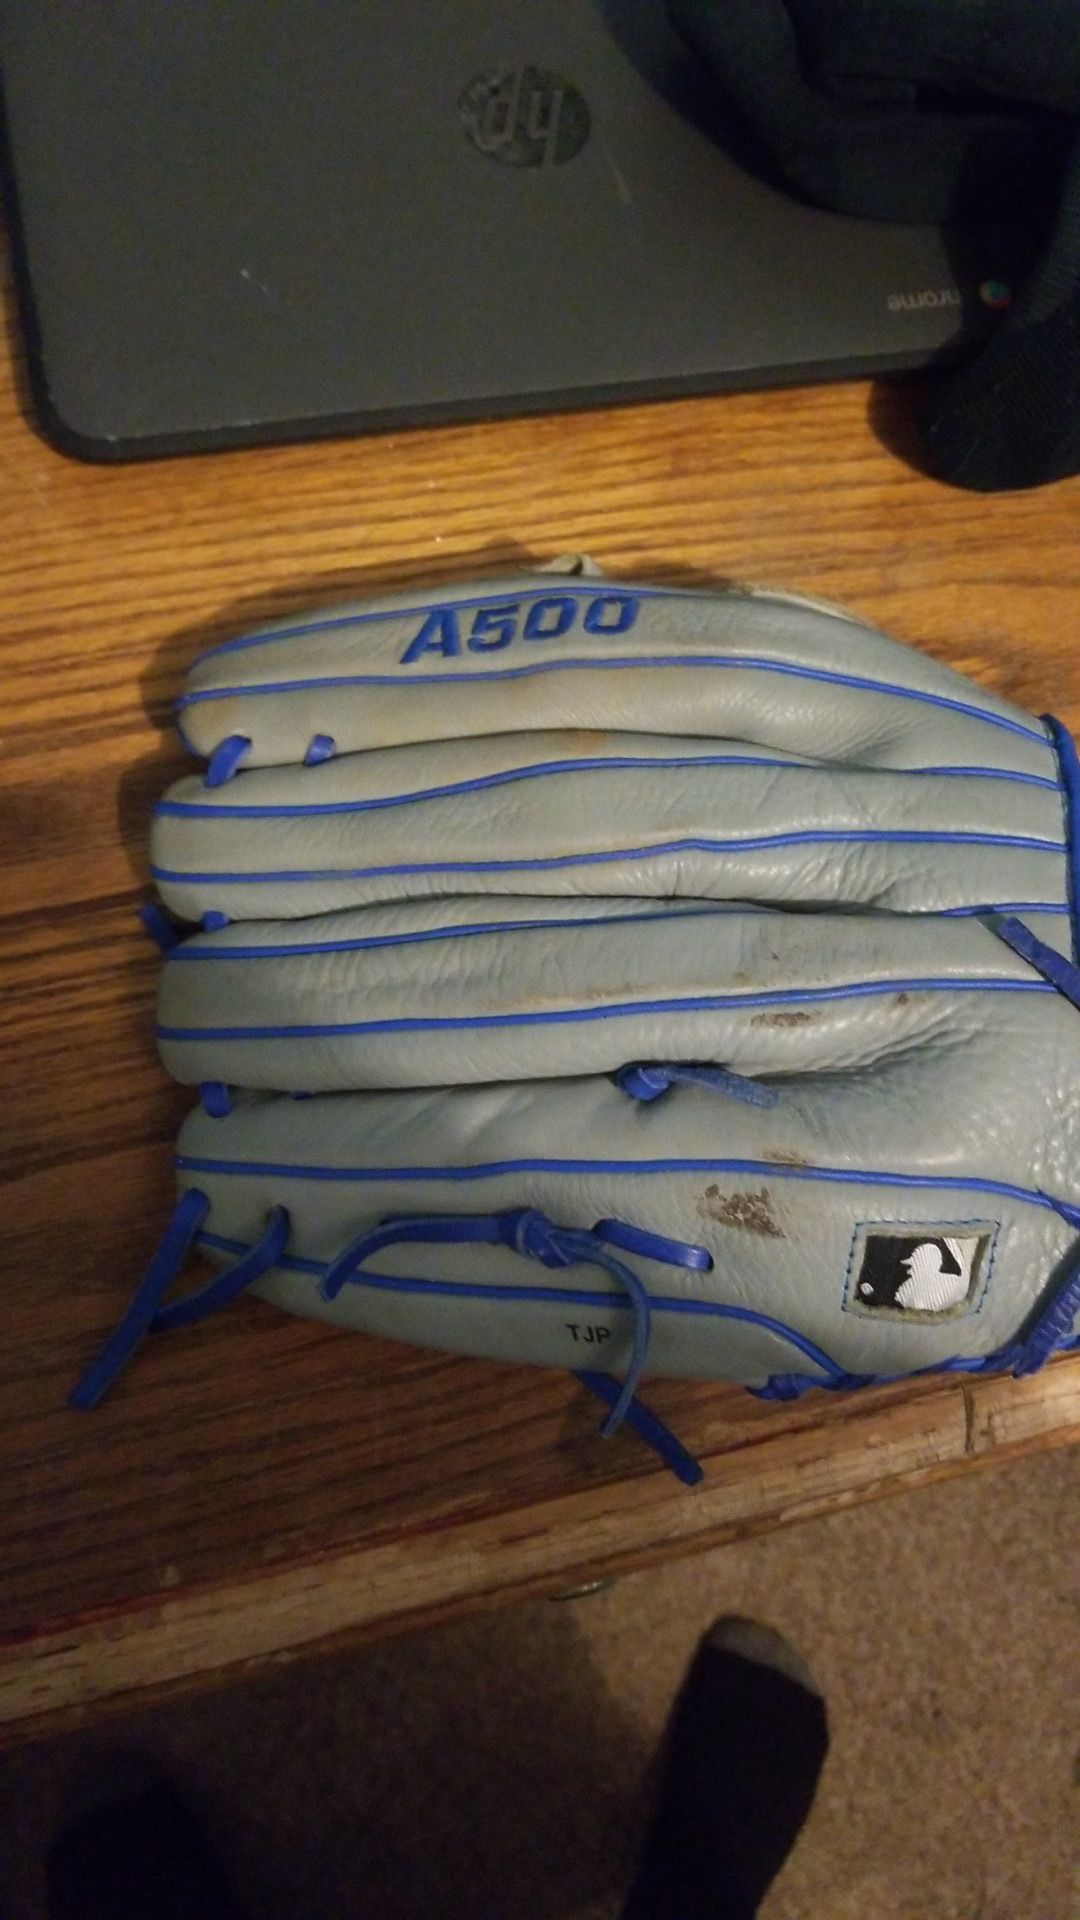 A good baseball glove